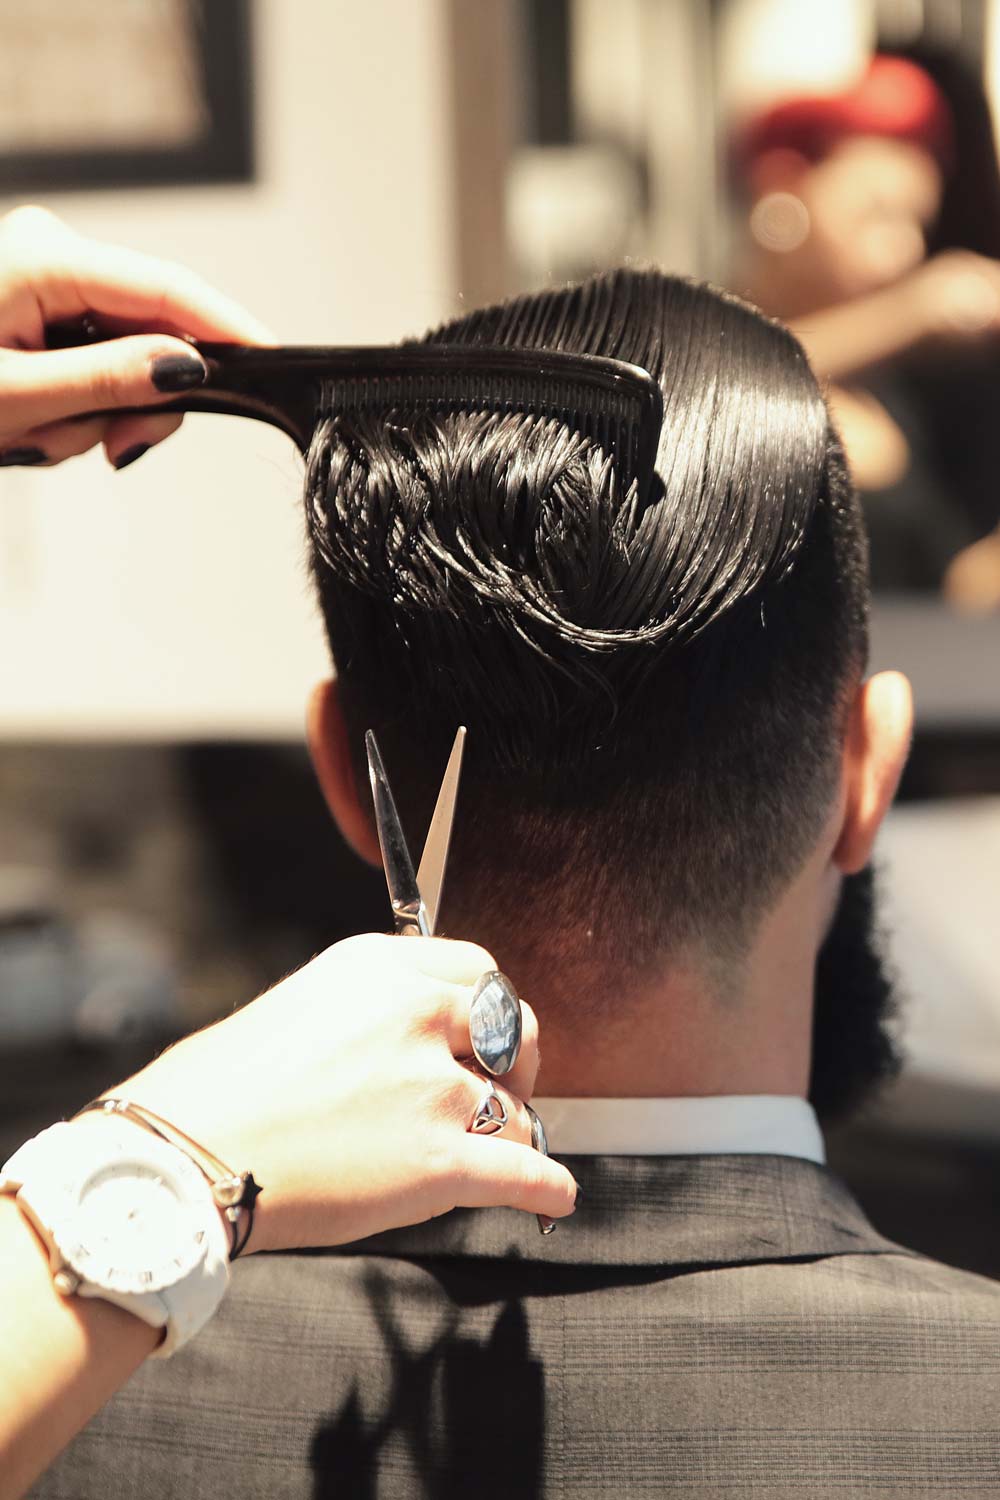  Idéal pour coiffure ou lutilisation à domicile Noir Moontay 14 cm Barber Coupe de cheveux Ciseaux/cisaillement Japon 440 C Fait à la main Haut de gamme en acier japonais  